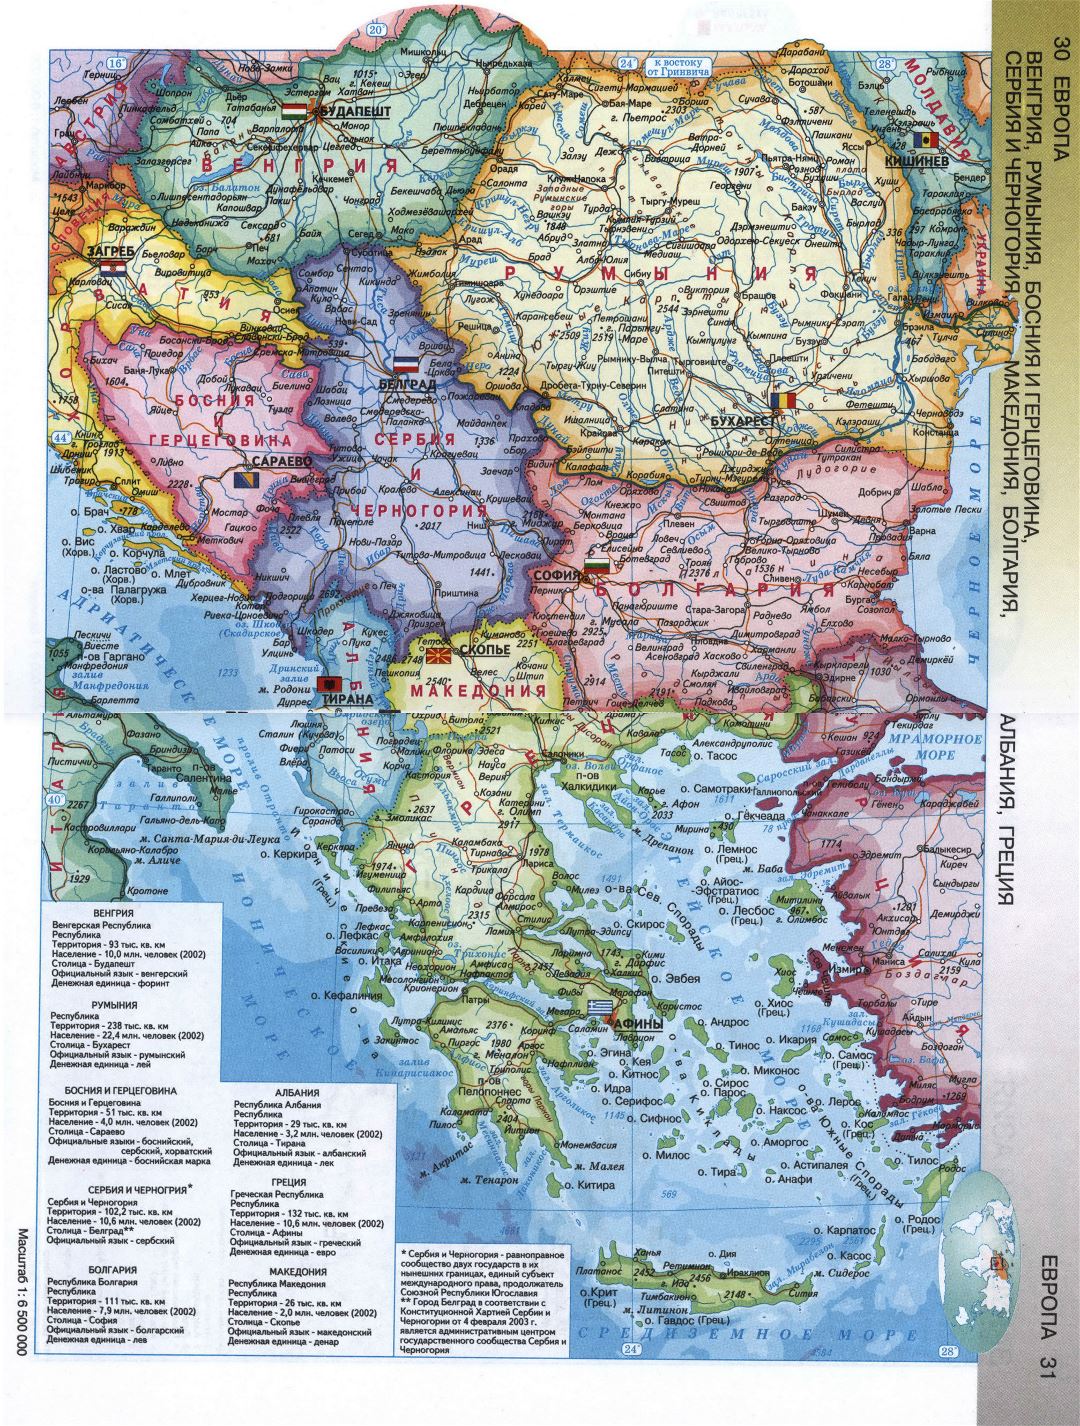 Mapa político detallada del sudeste de Europa en ruso